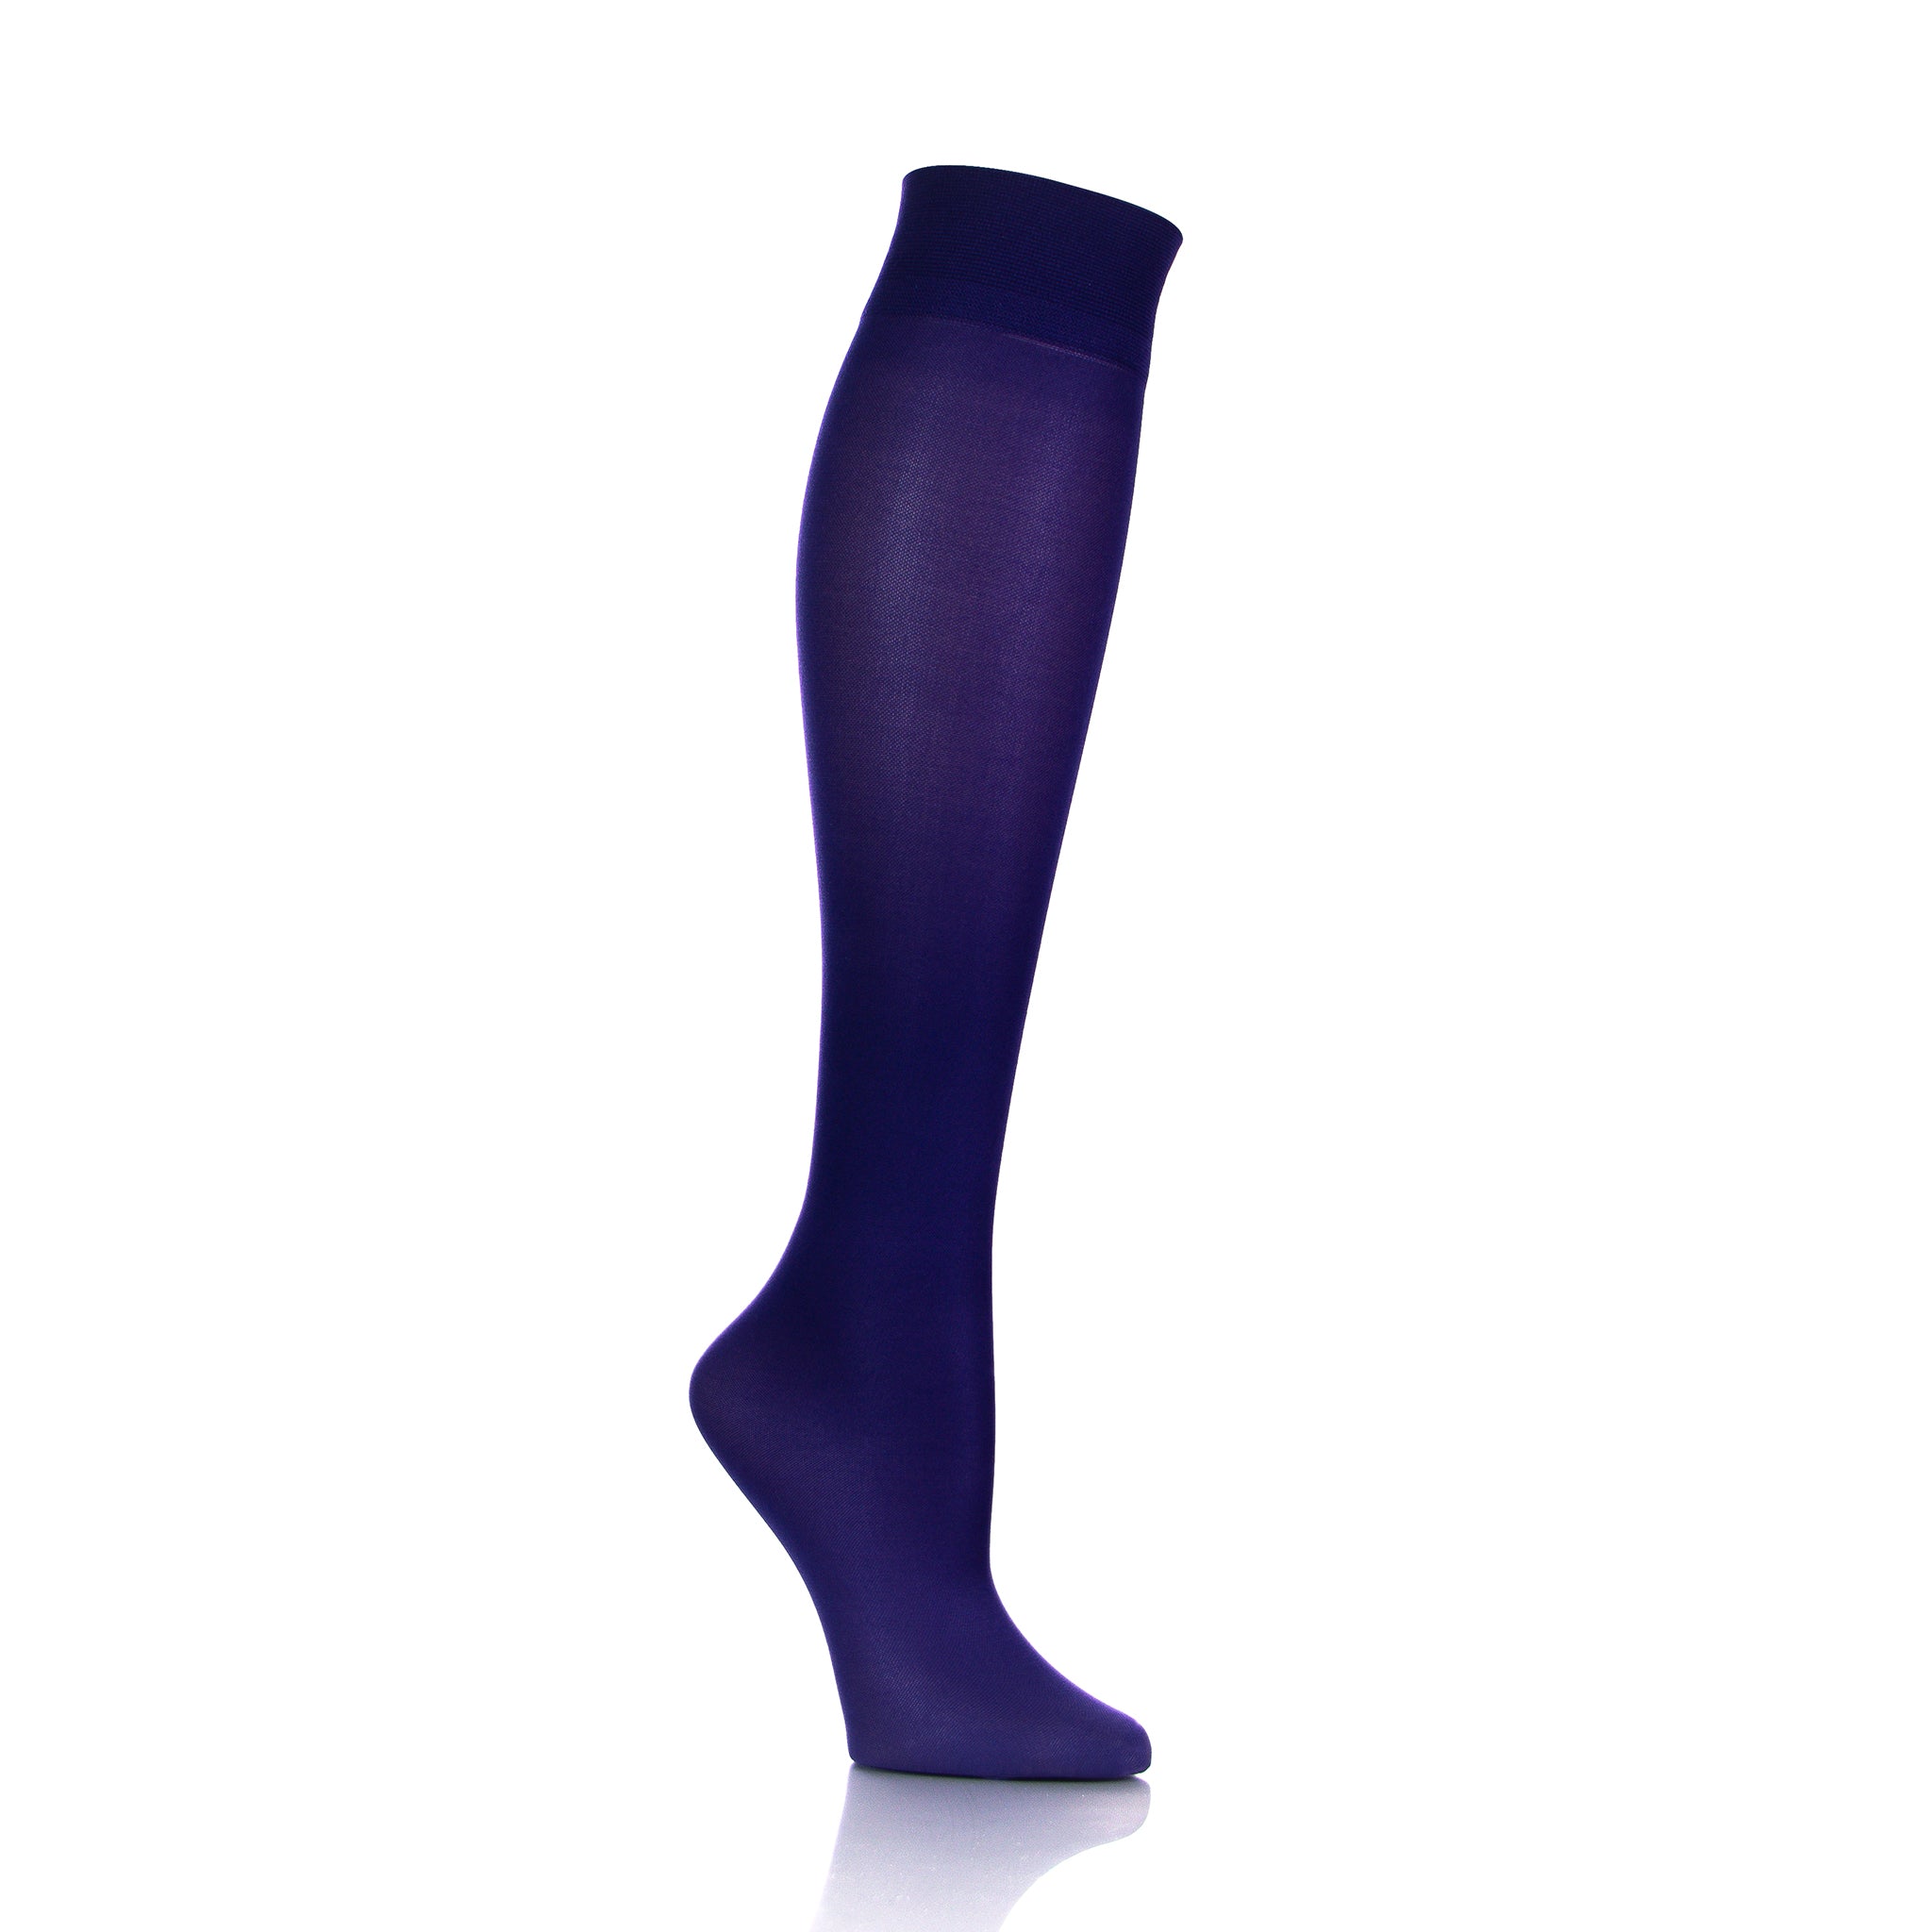 Support Hose For Women - Purple - Doctor Brace Softmedi - Inside Leg View